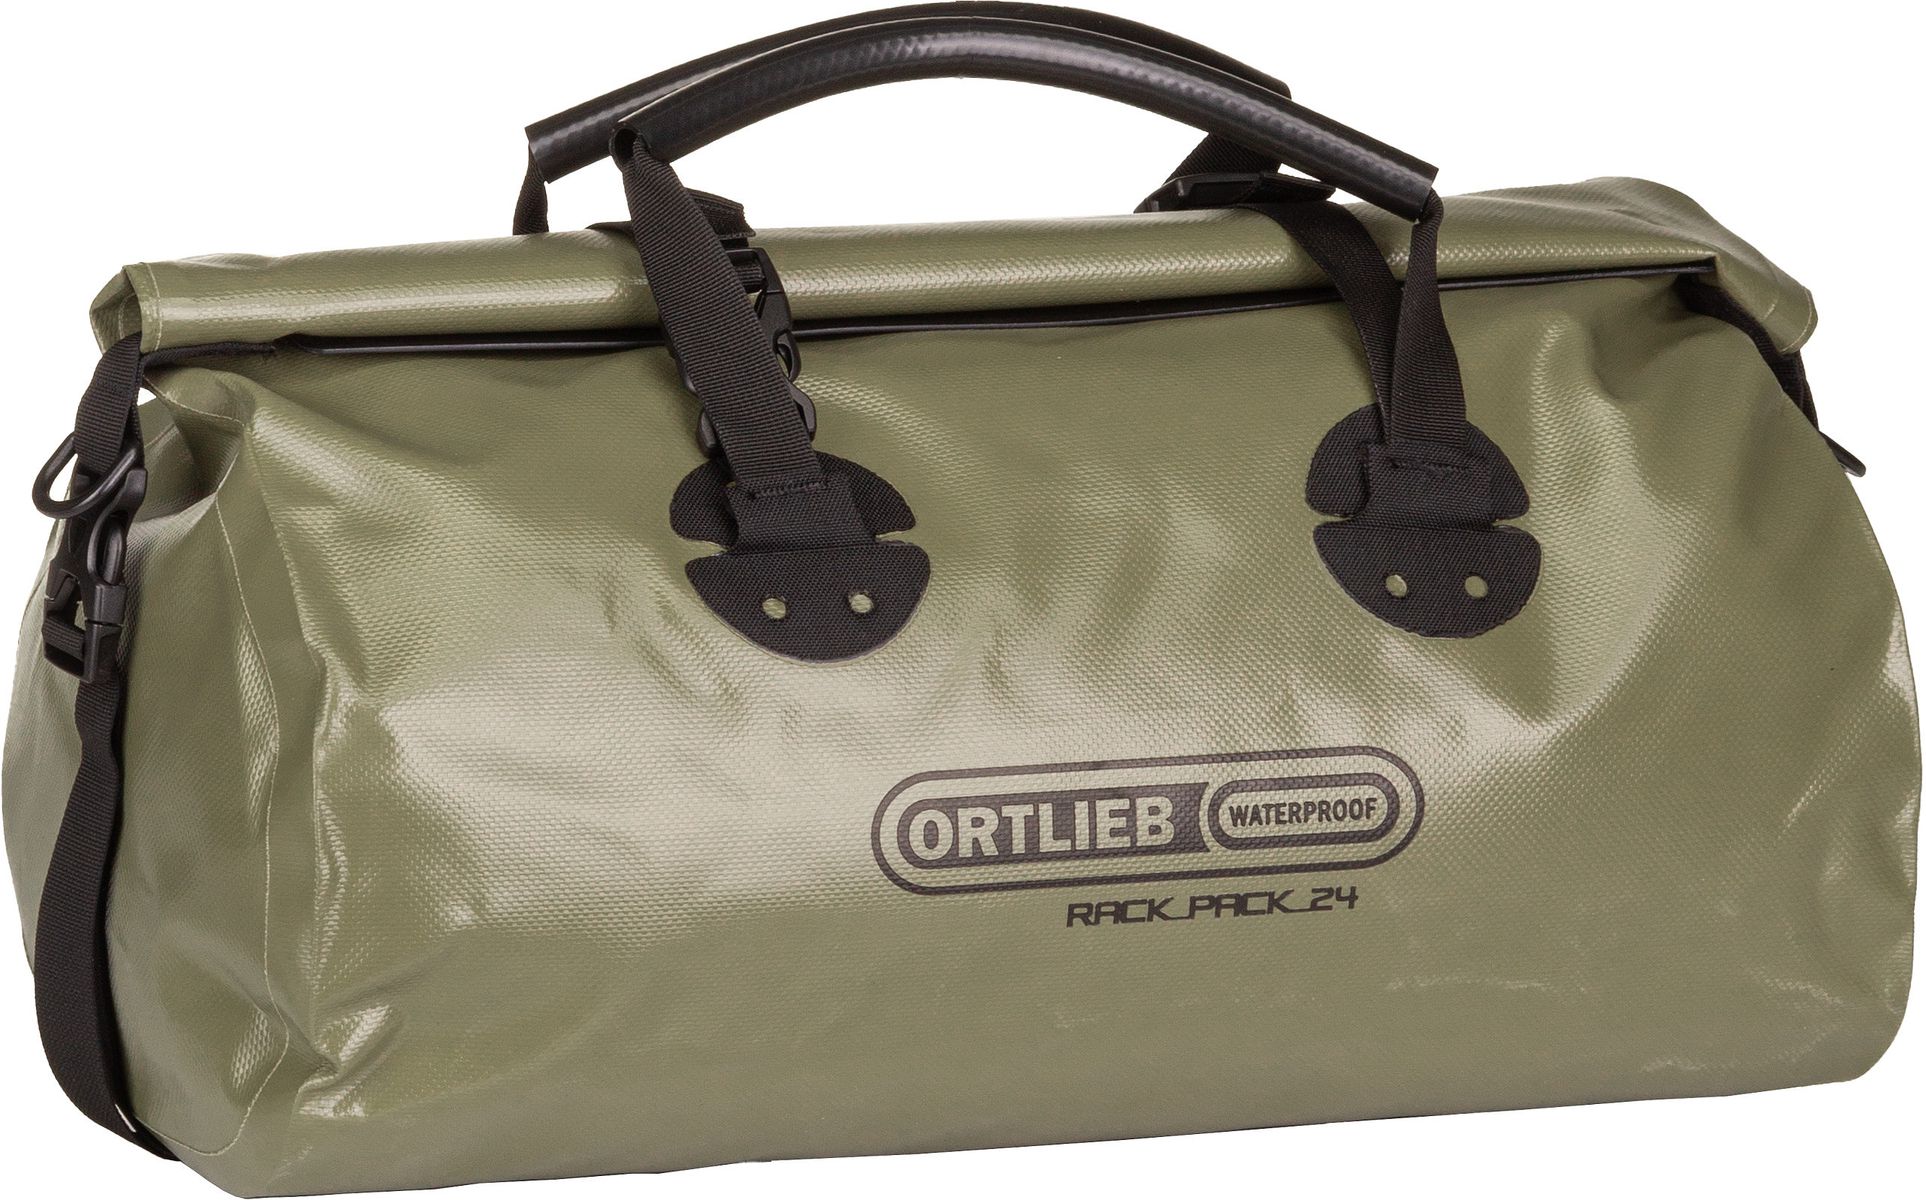 ORTLIEB Rack-Pack 24L  in Oliv (24 Liter), Reisetasche